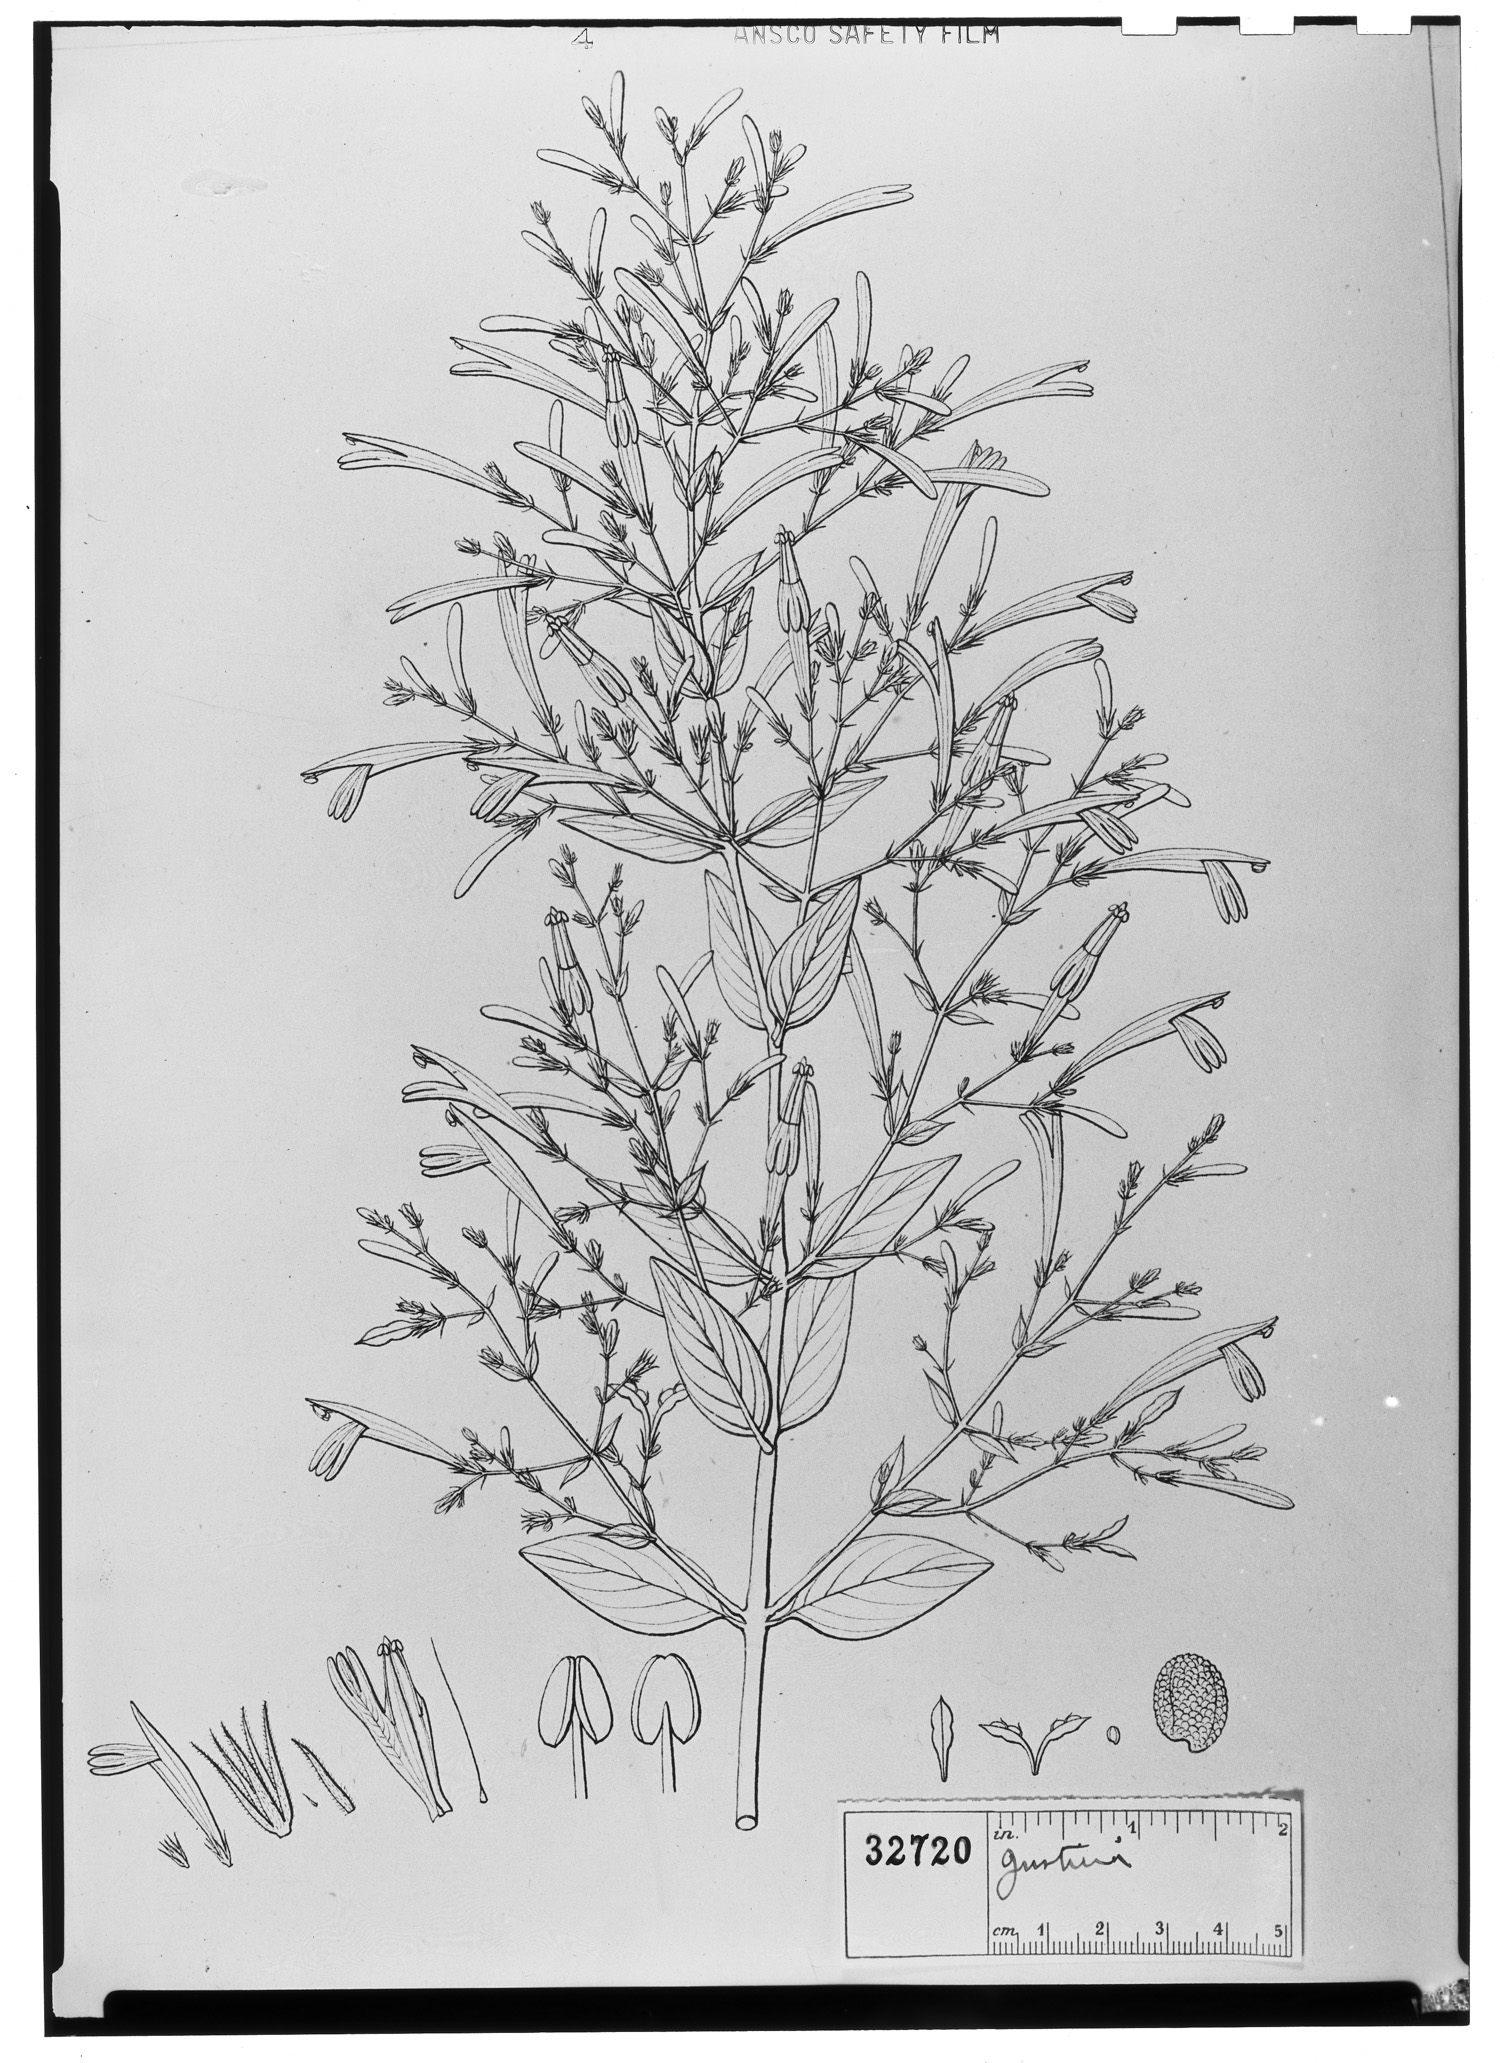 Geissomeria pubescens image